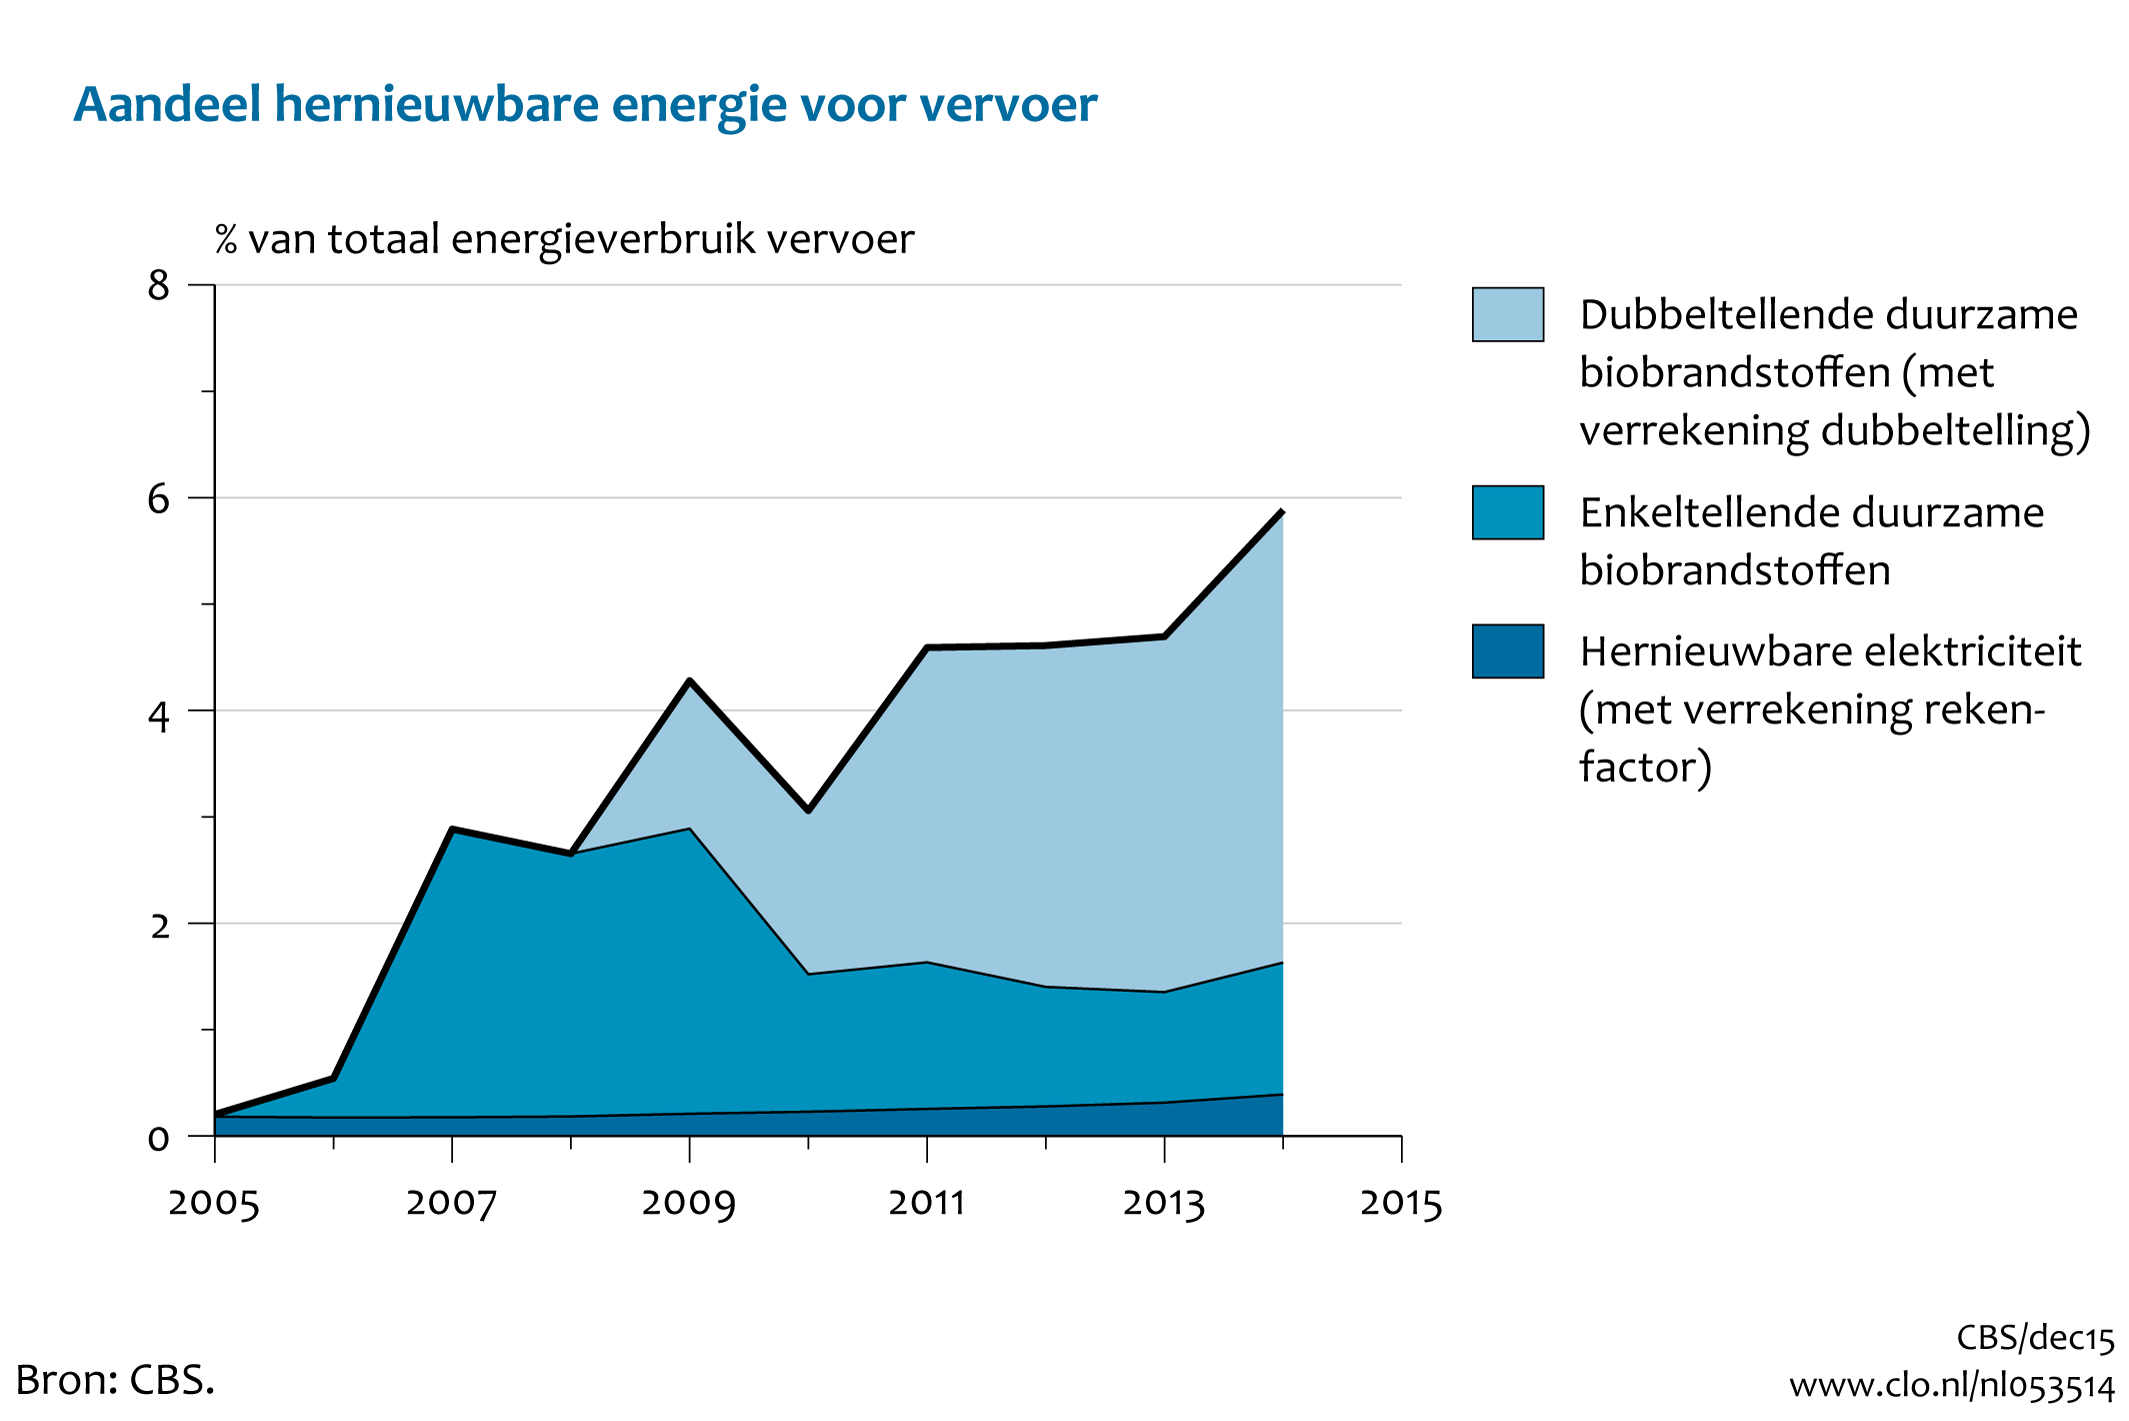 Figuur Aandeel hernieuwbare energie per energiedrager. In de rest van de tekst wordt deze figuur uitgebreider uitgelegd.